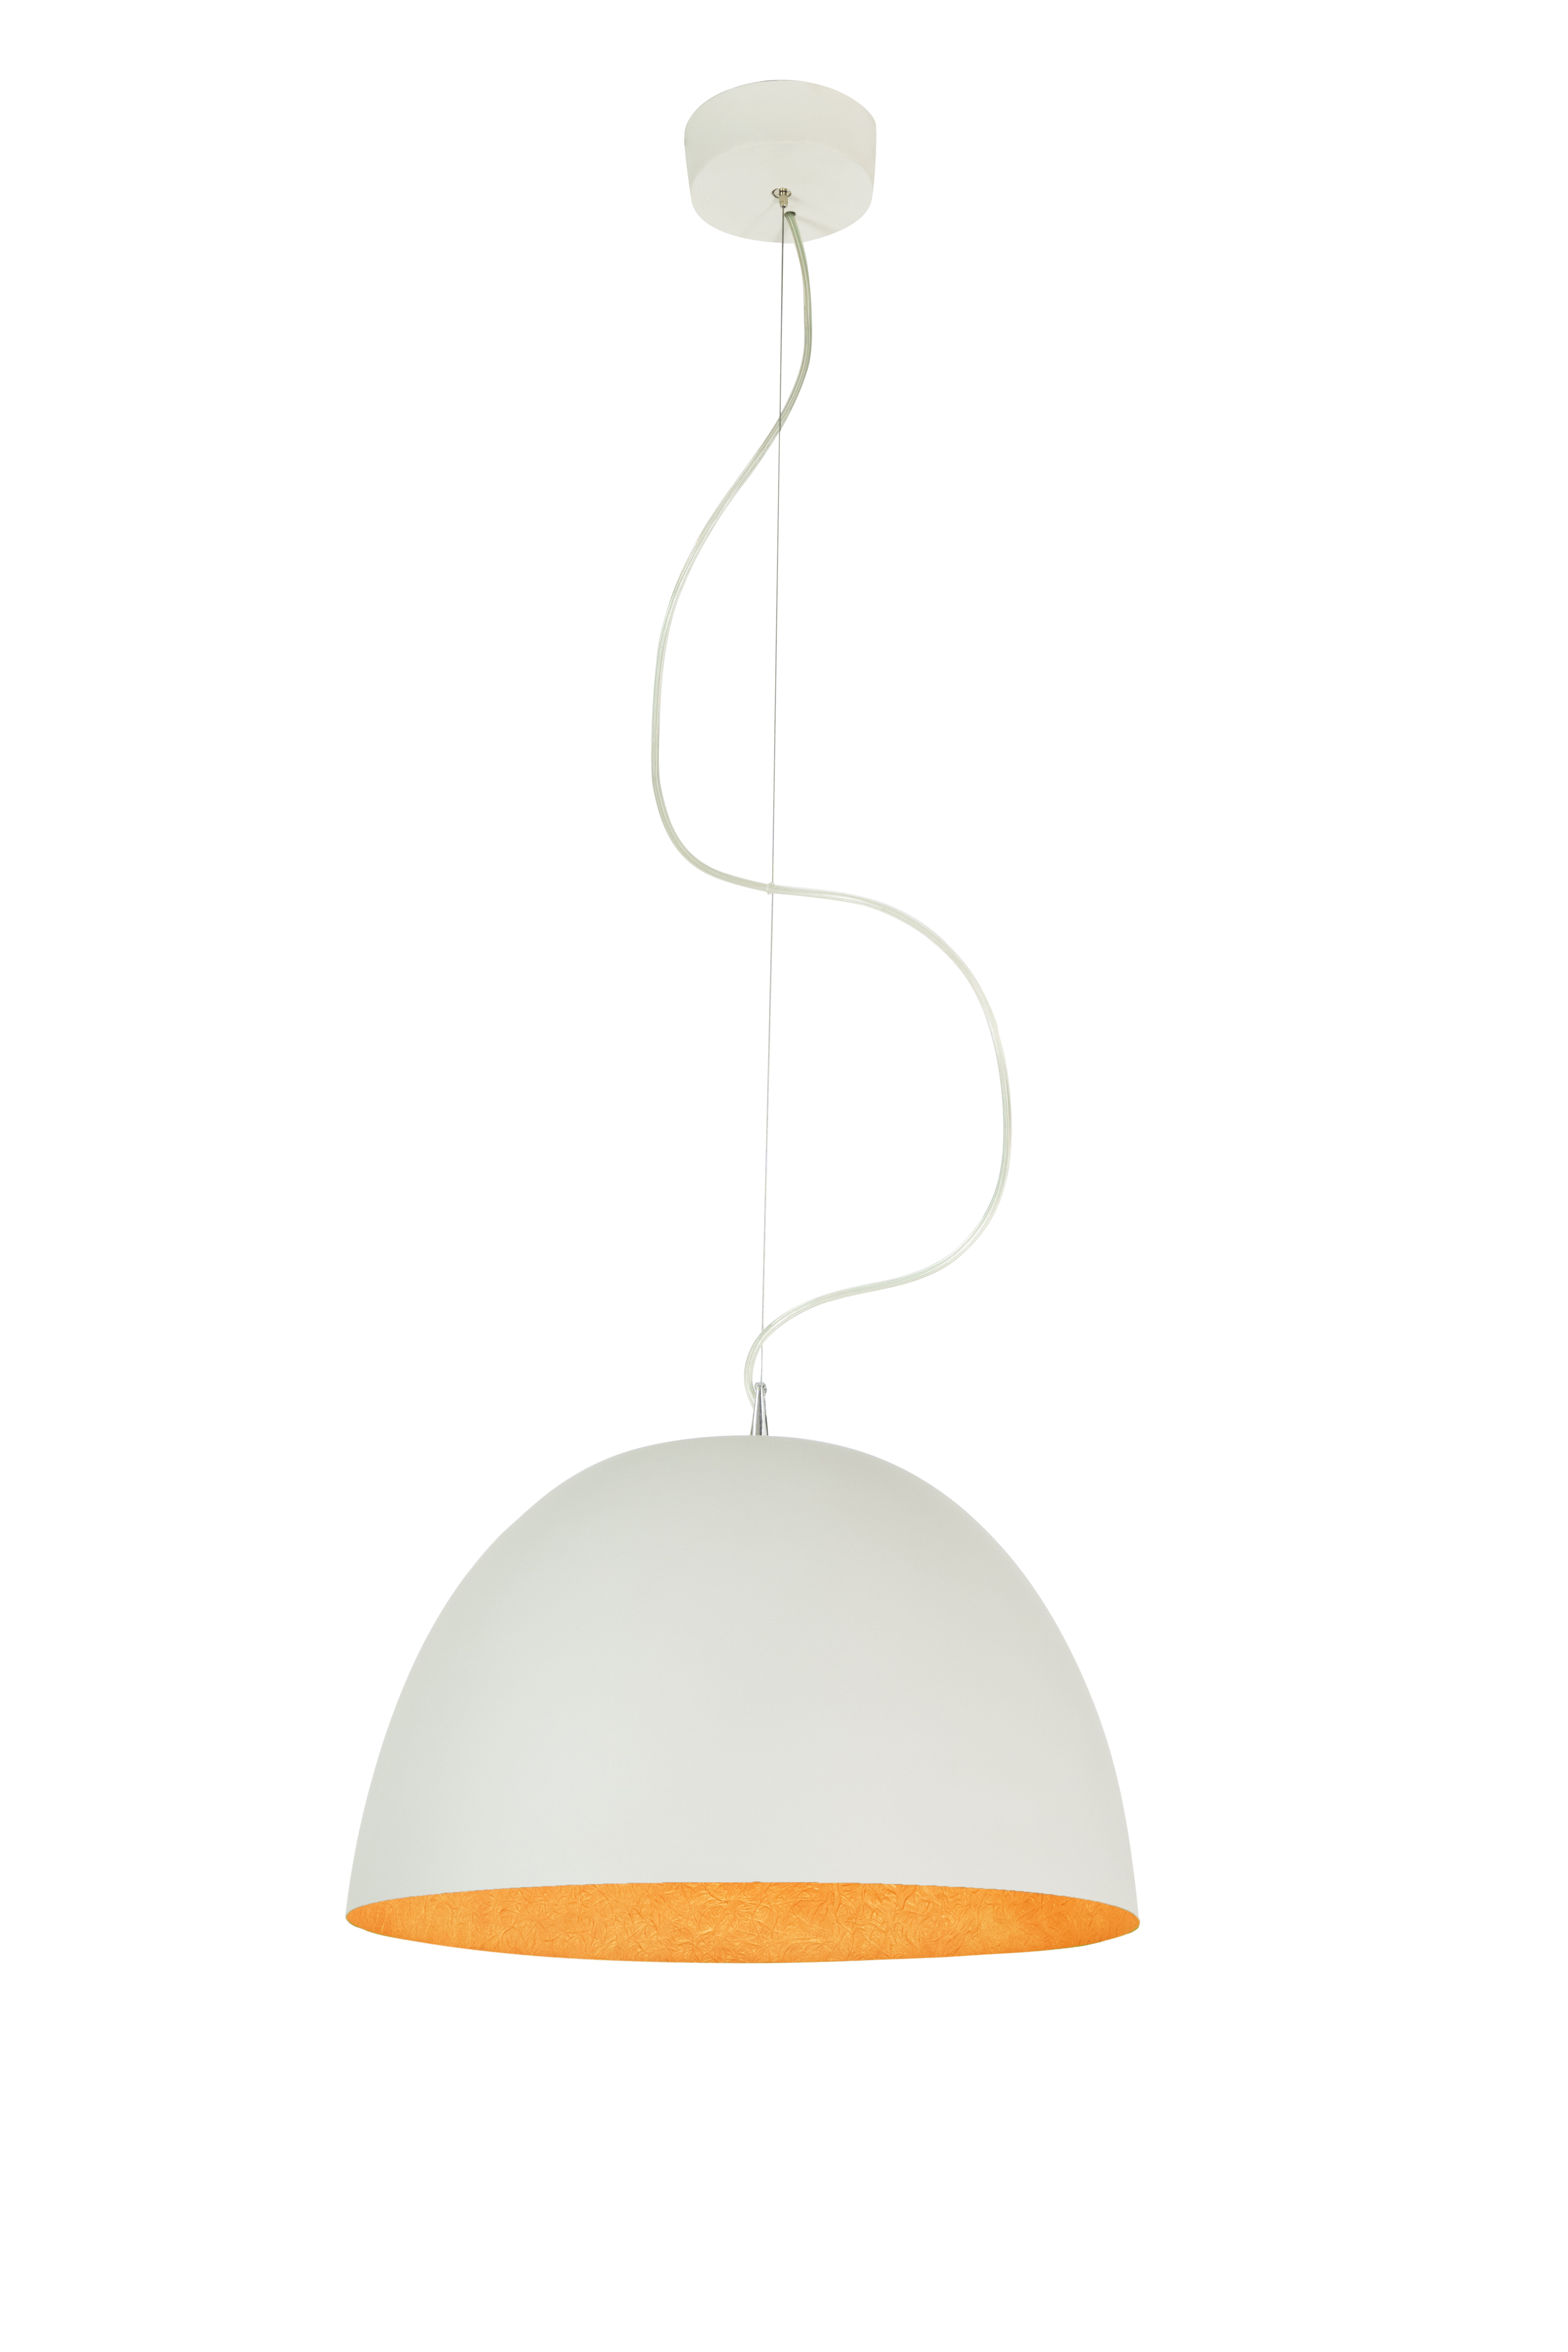 Pendant Lamp H2O Cemento In-Es Artdesign Collection Matt Color Bianco Orange Size 27,5 Cm  Diam. 46 Cm